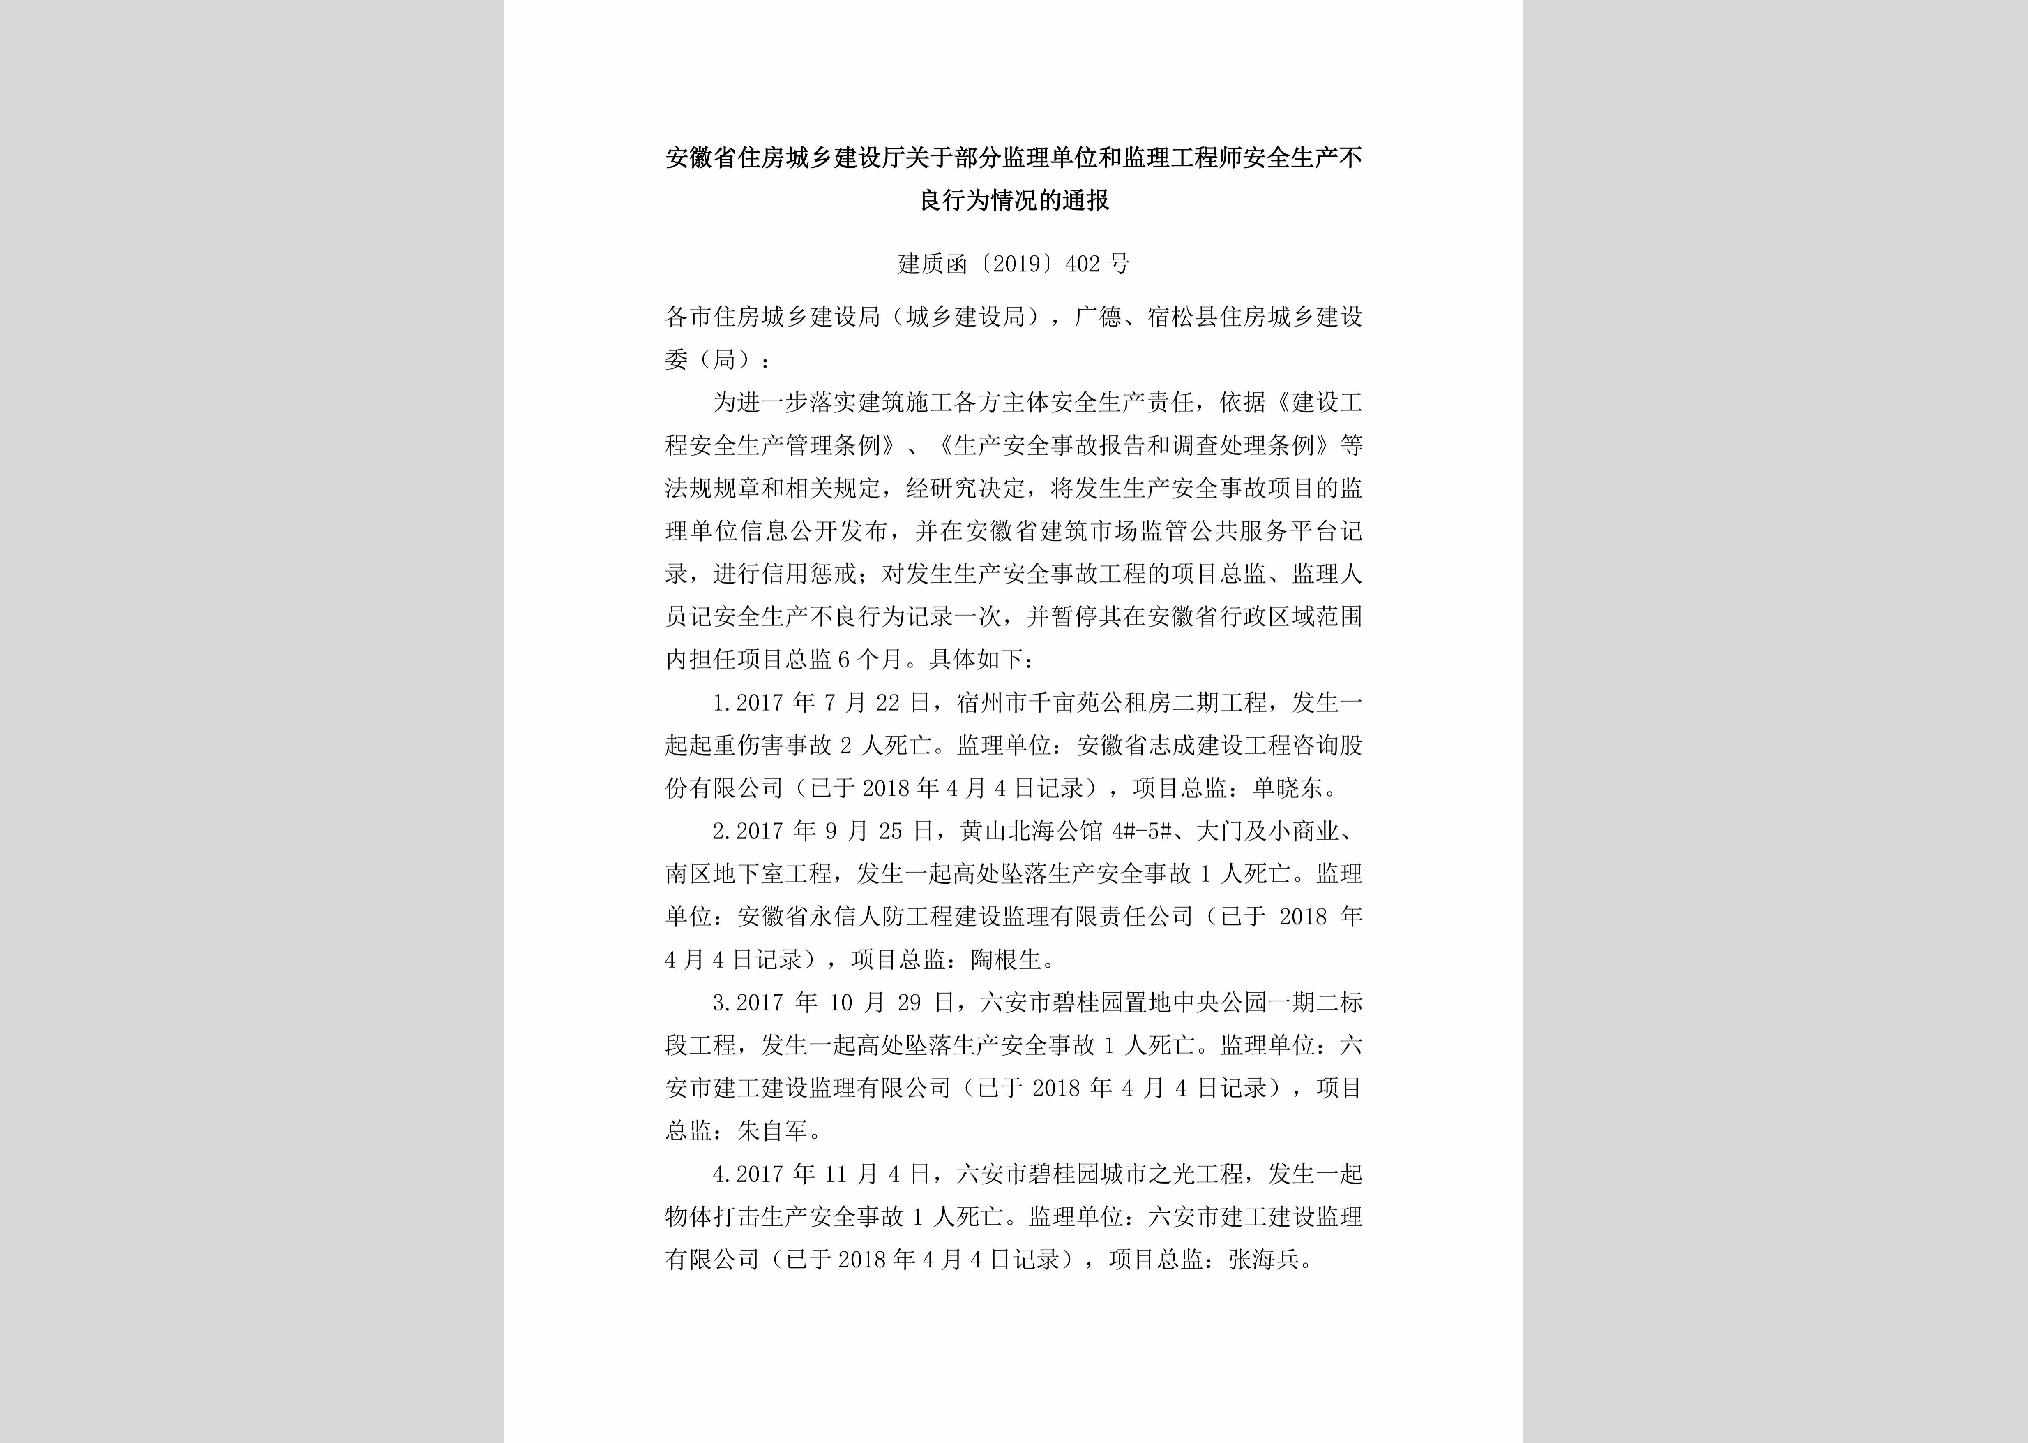 建质函[2019]402号：安徽省住房城乡建设厅关于部分监理单位和监理工程师安全生产不良行为情况的通报